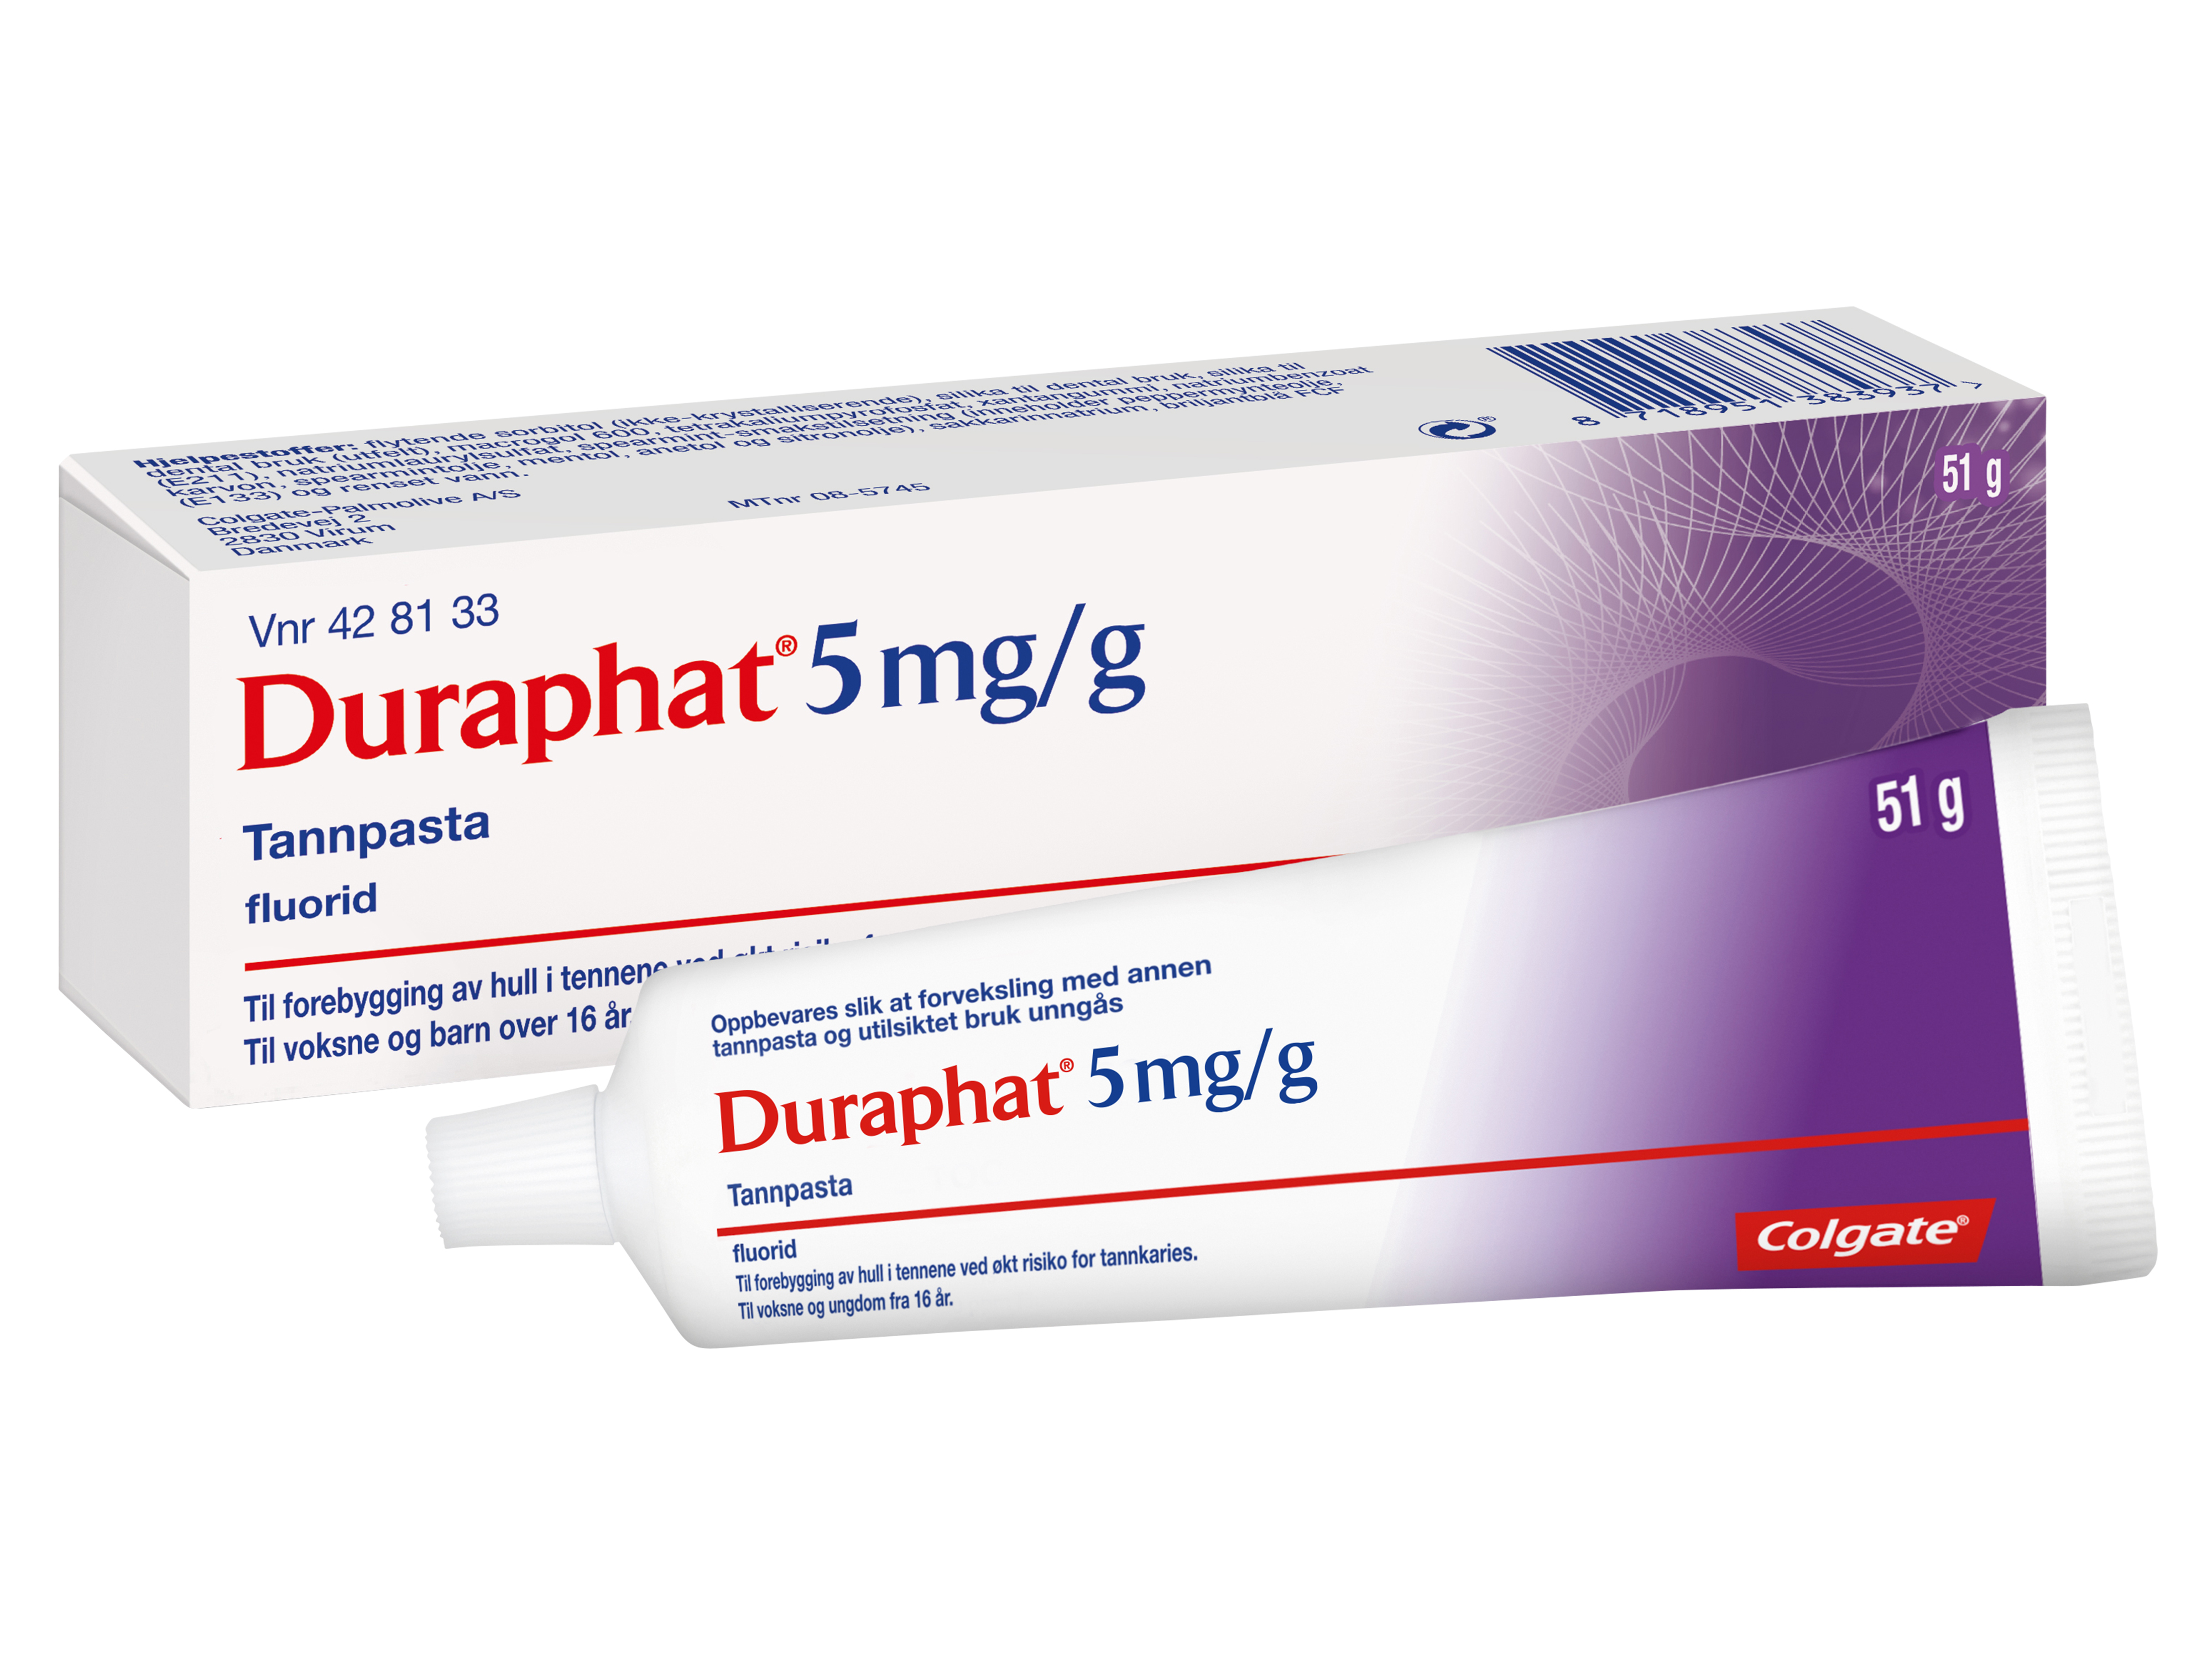 Duraphat Reseptfri fluortannpasta 5 mg/g, 51 g.